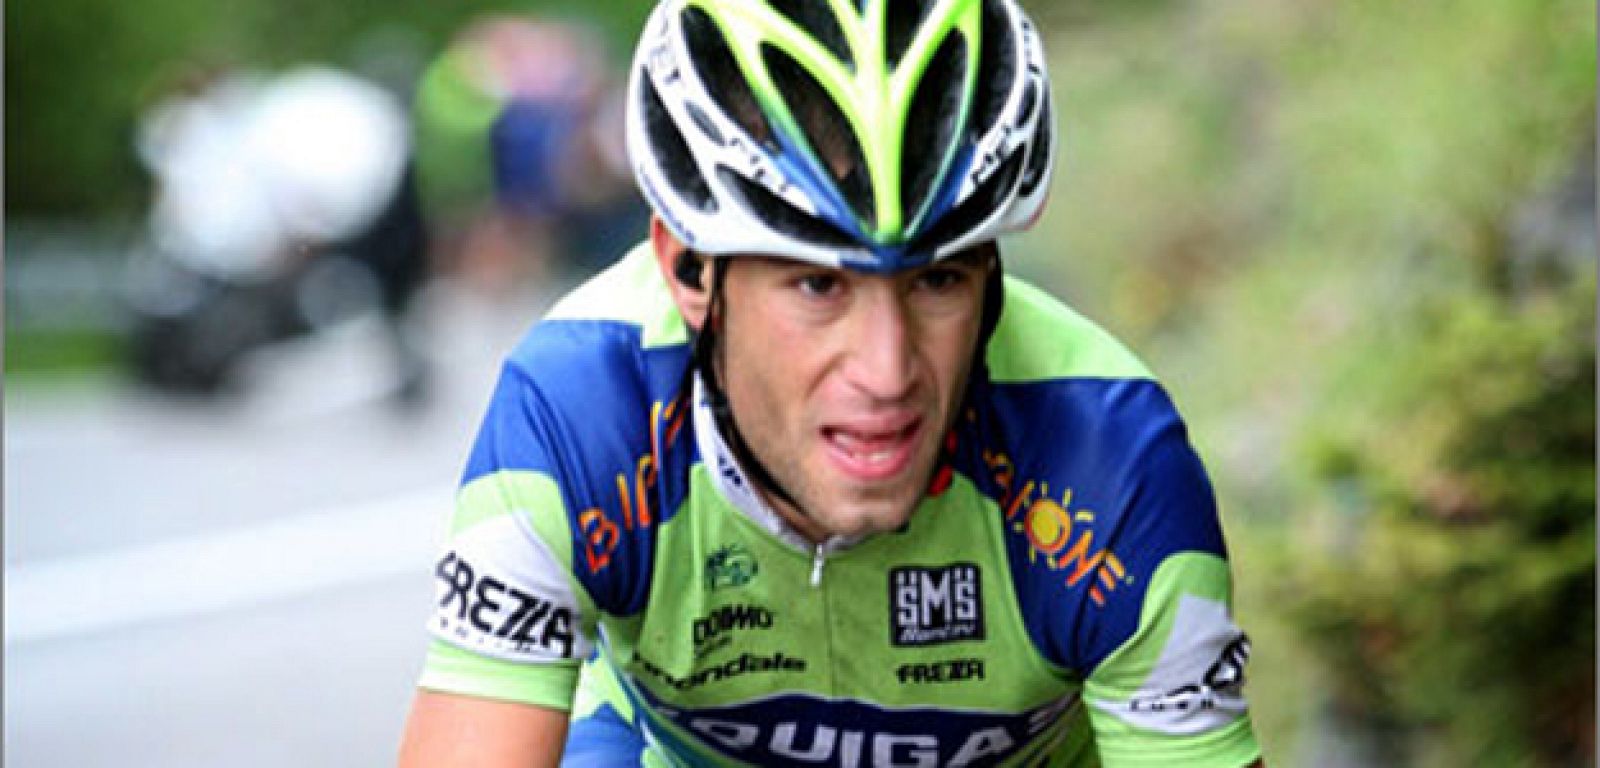 El corredor italiano Vincenzo Nibali, ganador de la Vuelta 2010, en imagen de archivo